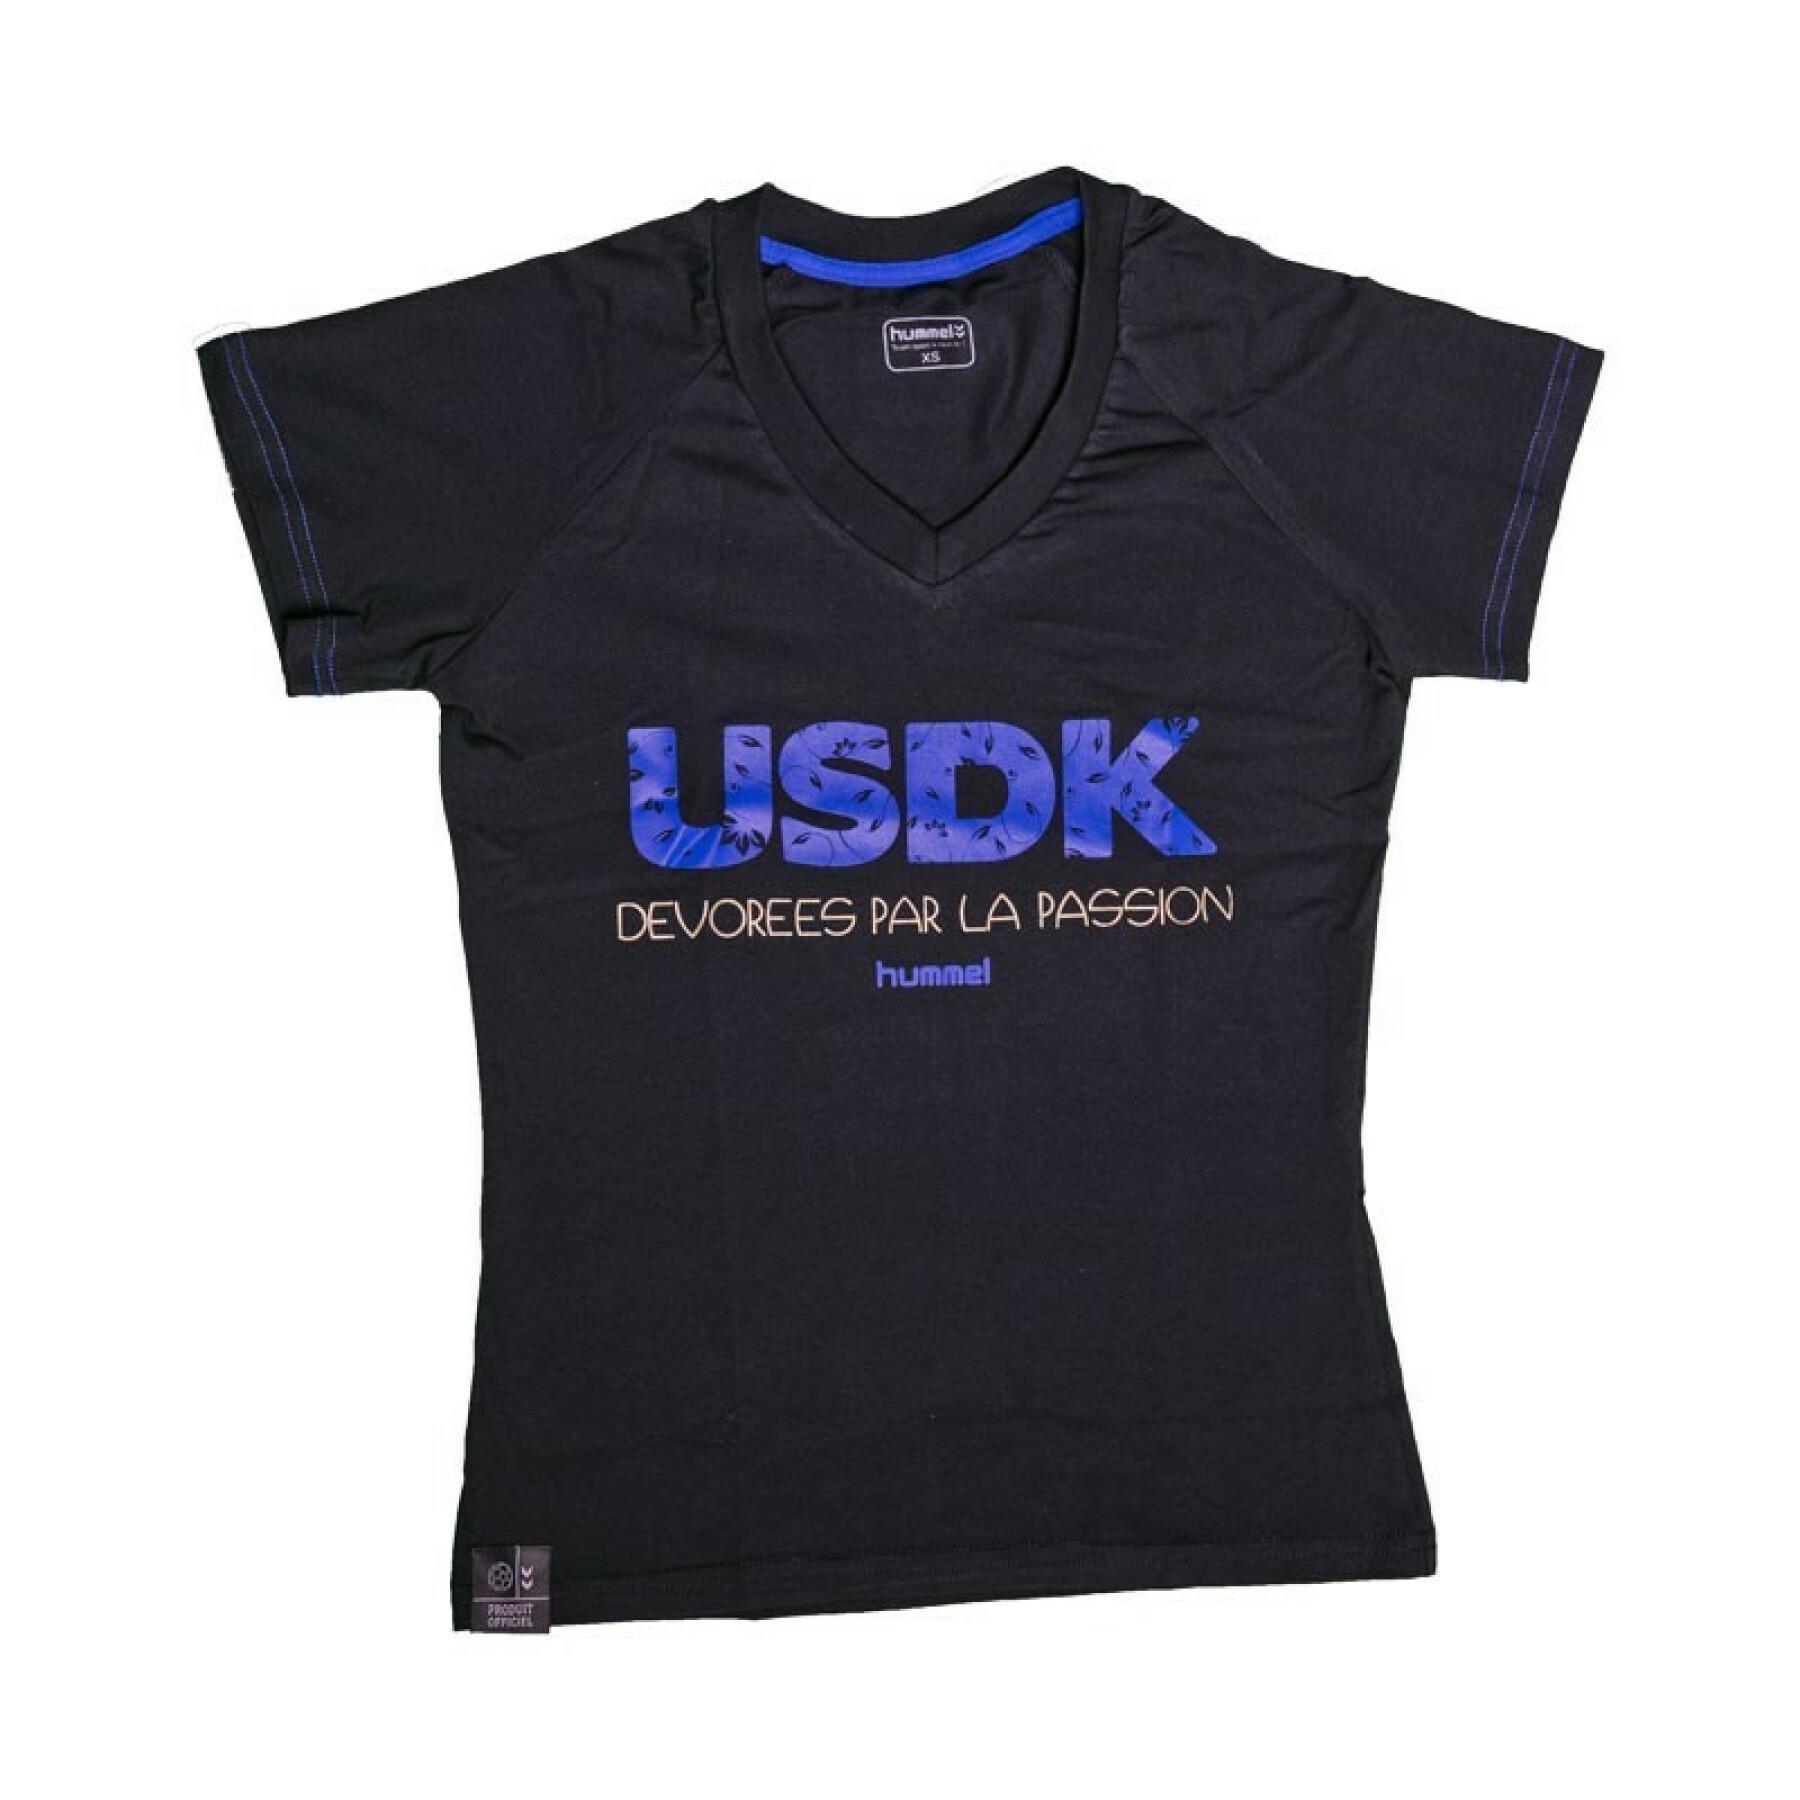 T-shirt donna US Dunkerque Handball 2016-2017